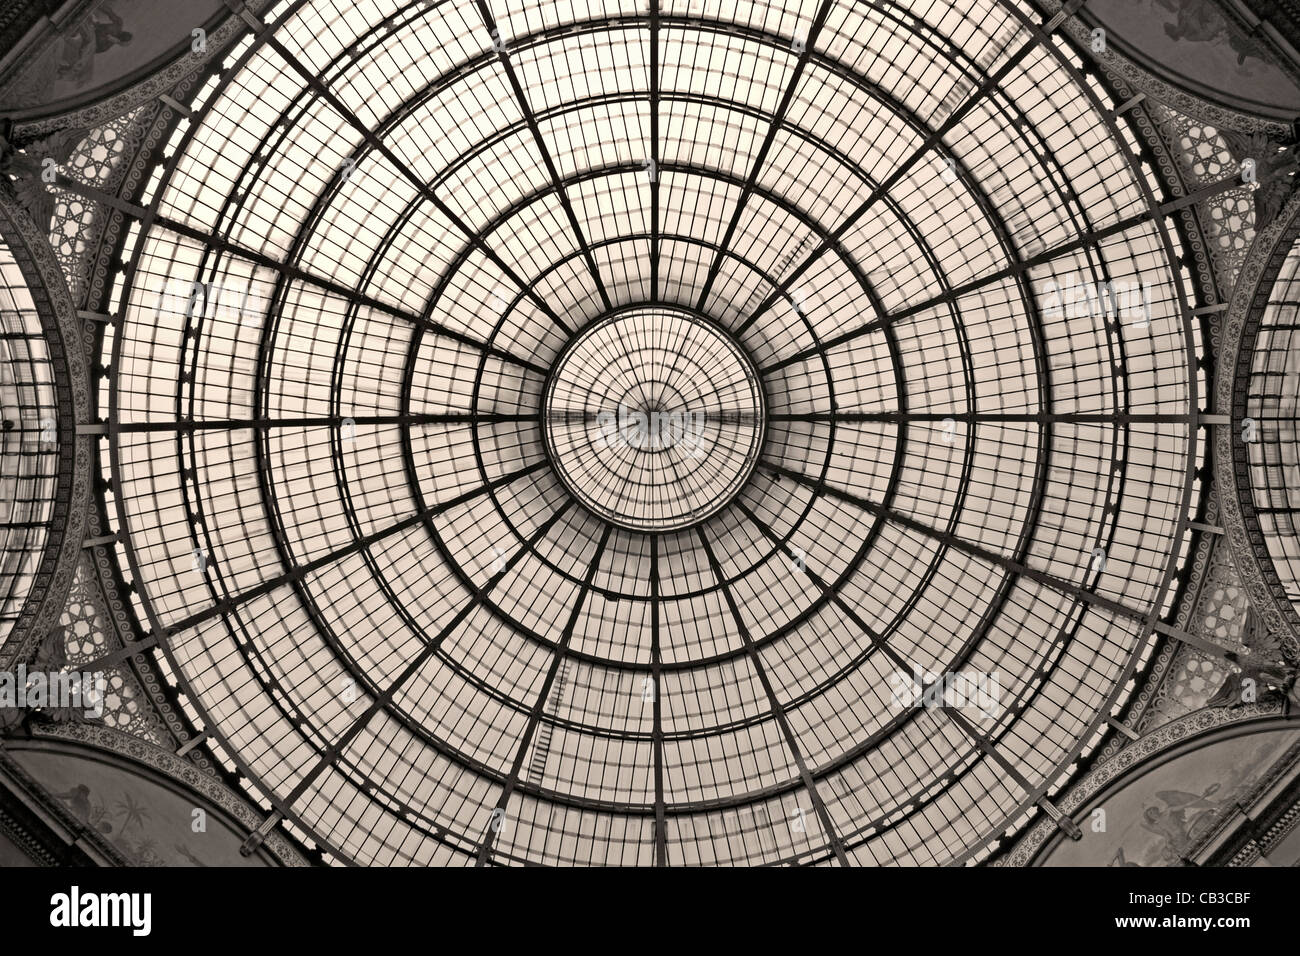 Milán - cúpula de vidrio de la Galleria Vittorio Emanuele Foto de stock